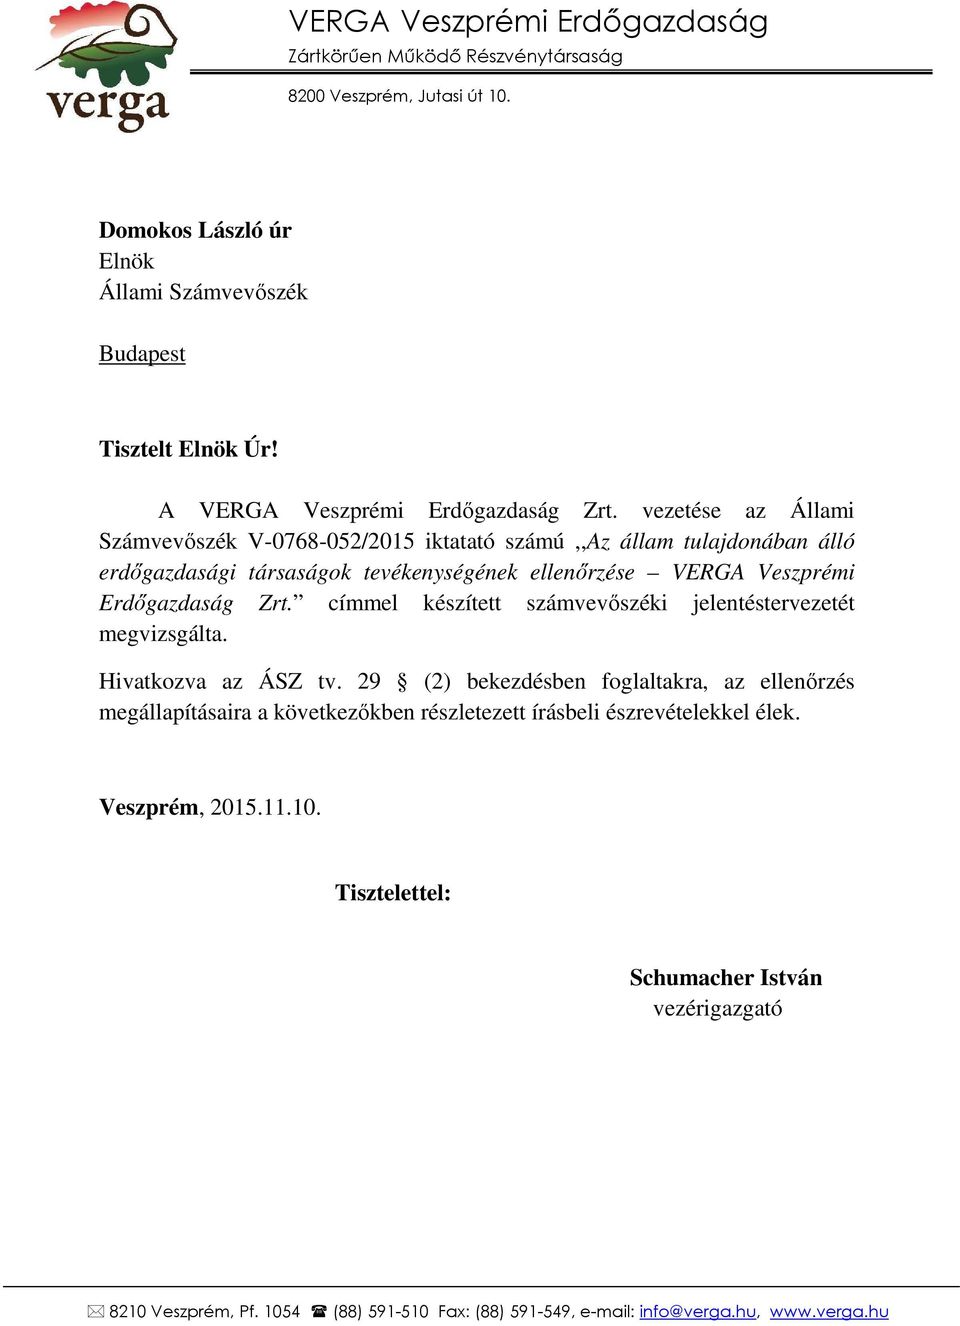 vezetése az Állami Számvevőszék V-0768-052/2015 iktatató számú,,az állam tulajdonában álló erdőgazdasági társaságok tevékenységének ellenőrzése VERGA Veszprémi Erdőgazdaság Zrt.